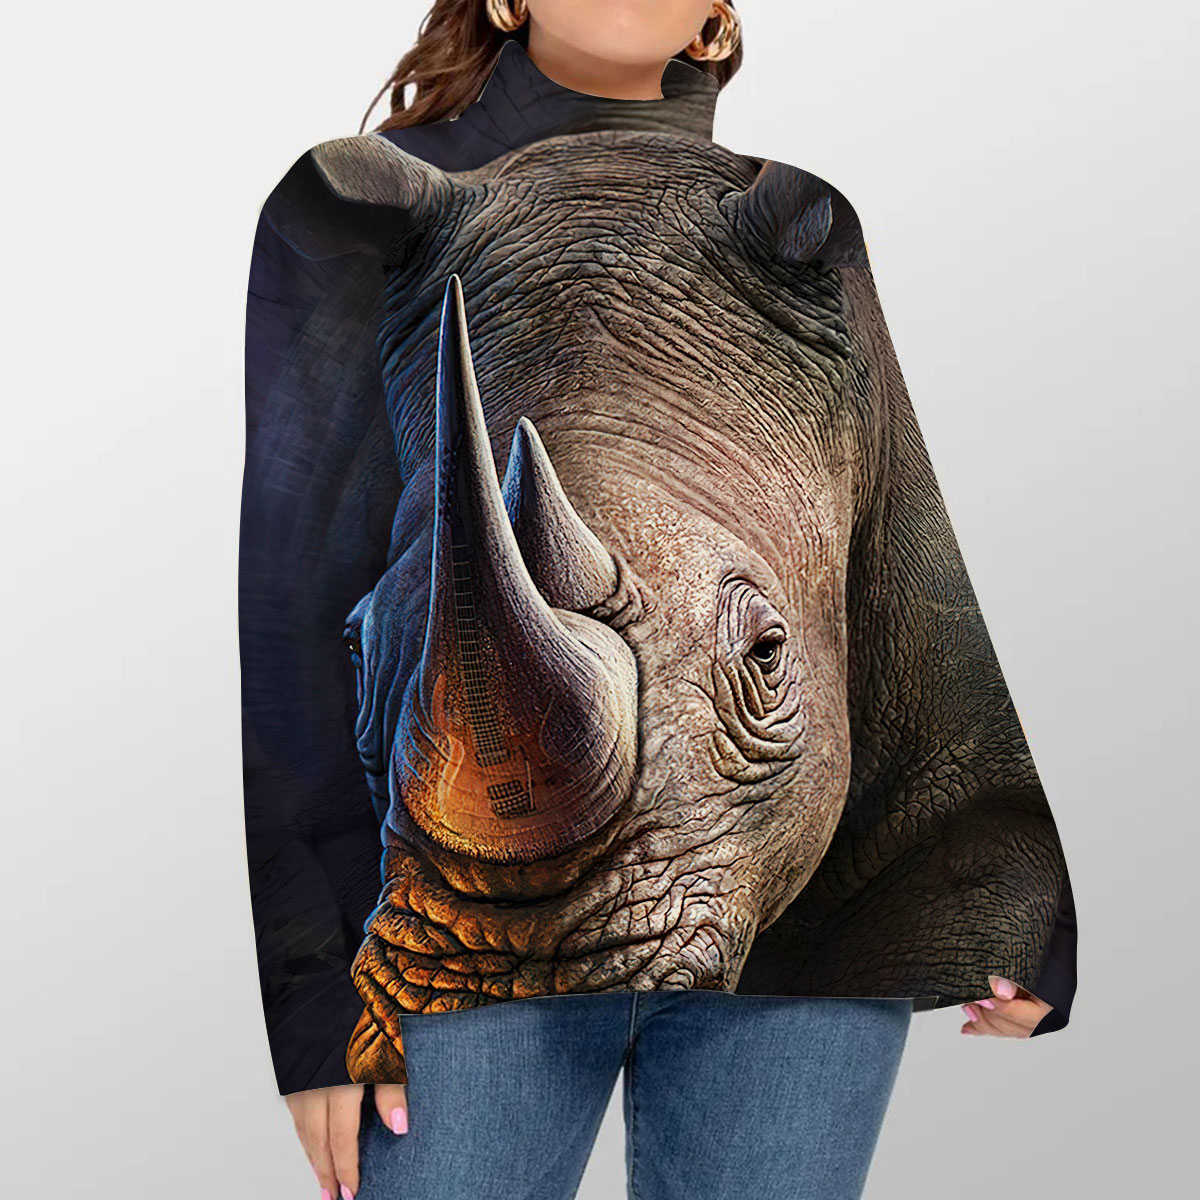 Rhino Turtleneck Sweater